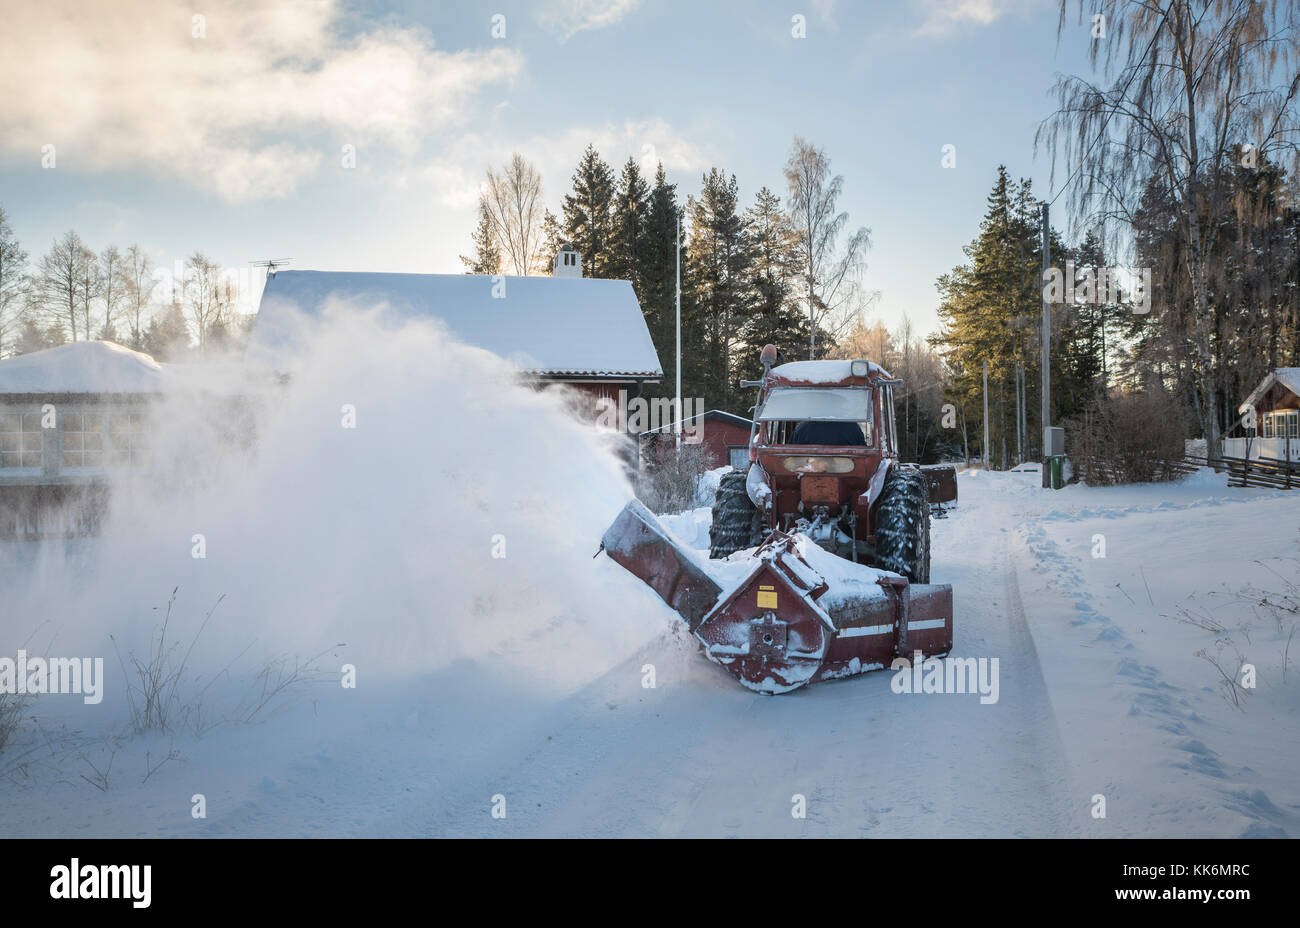 Tracteur avec chasse-neige sur une route de la campagne suédoise, Roslagen, Uppland, Suède, Scandinavie. Banque D'Images